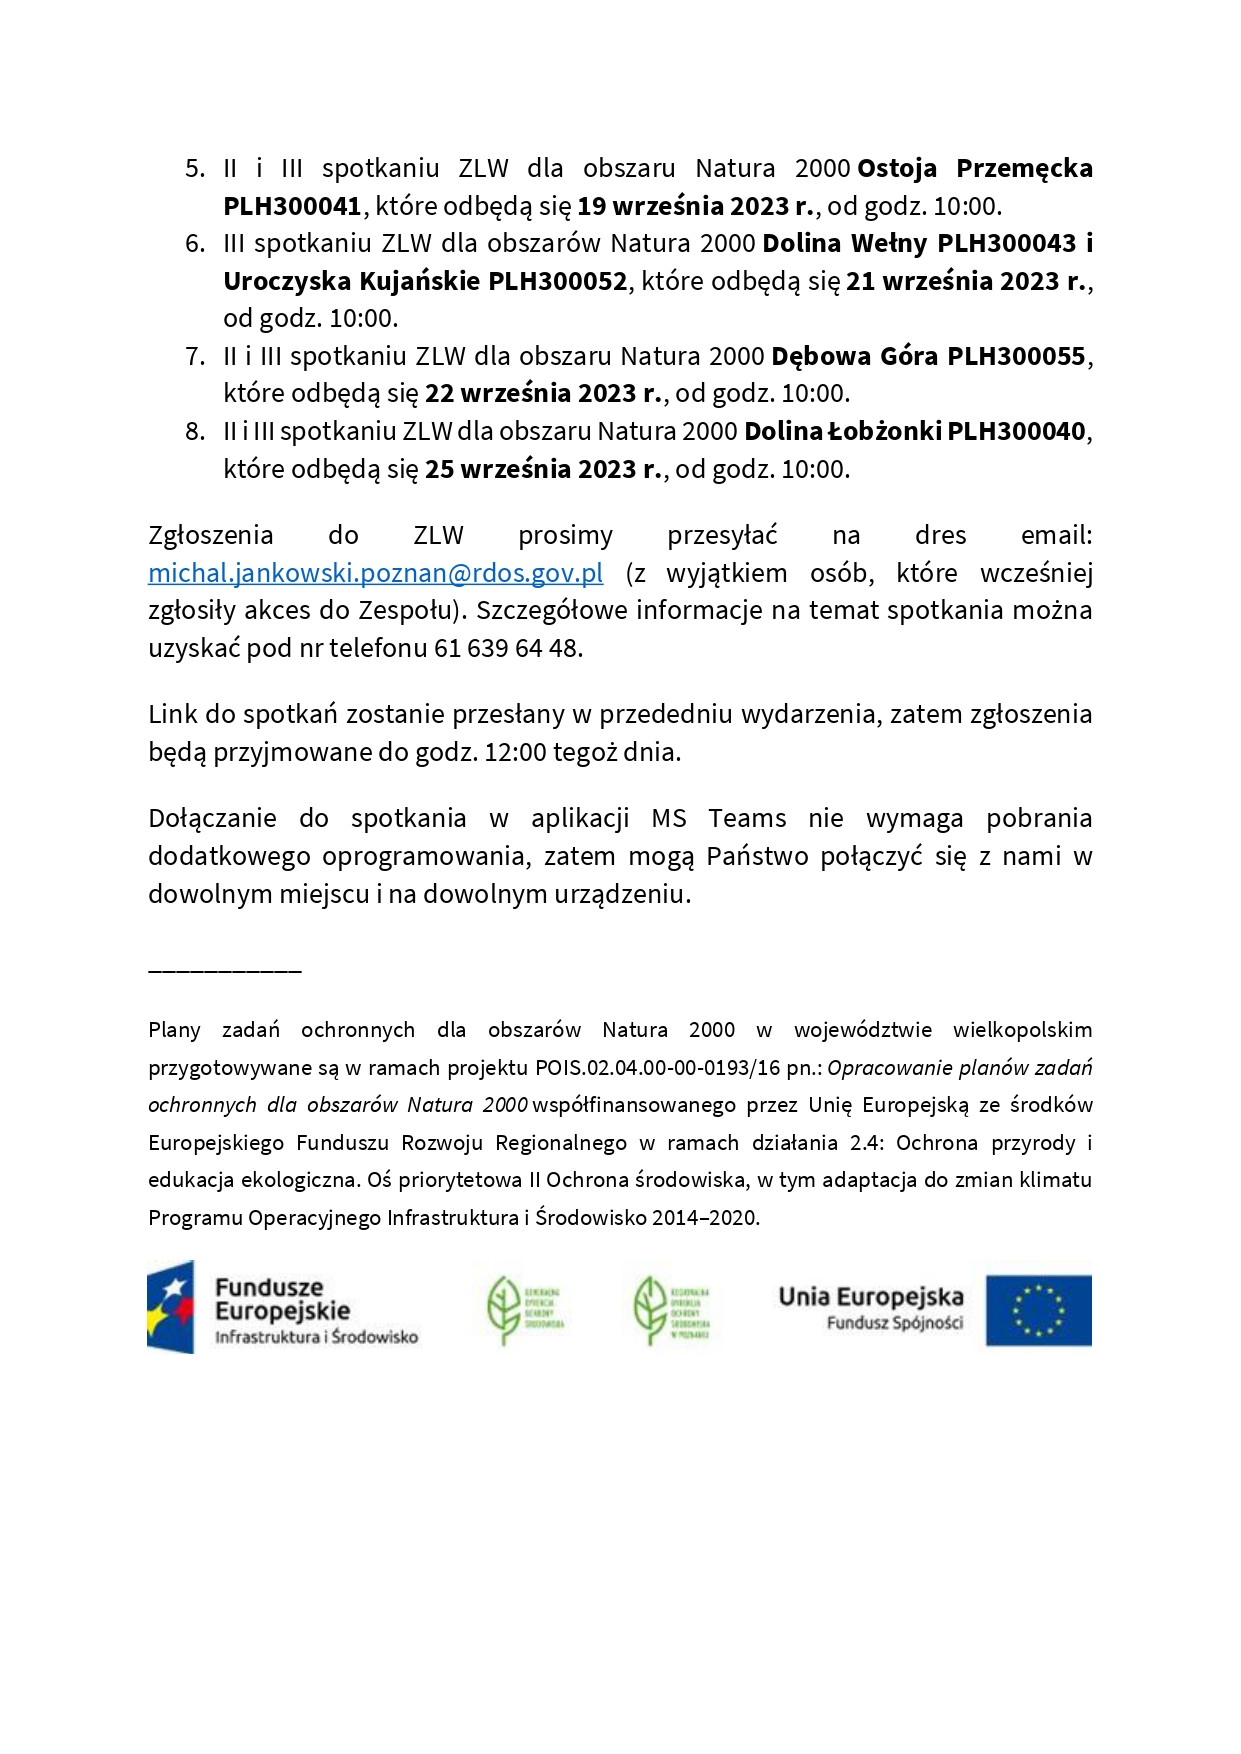 Zaproszenie na spotkania Zespołów Lokalnej Współpracy w sprawie projektów planów zadań ochronnych dla obszarów Natura 2000 w województwie wielkopolskim.